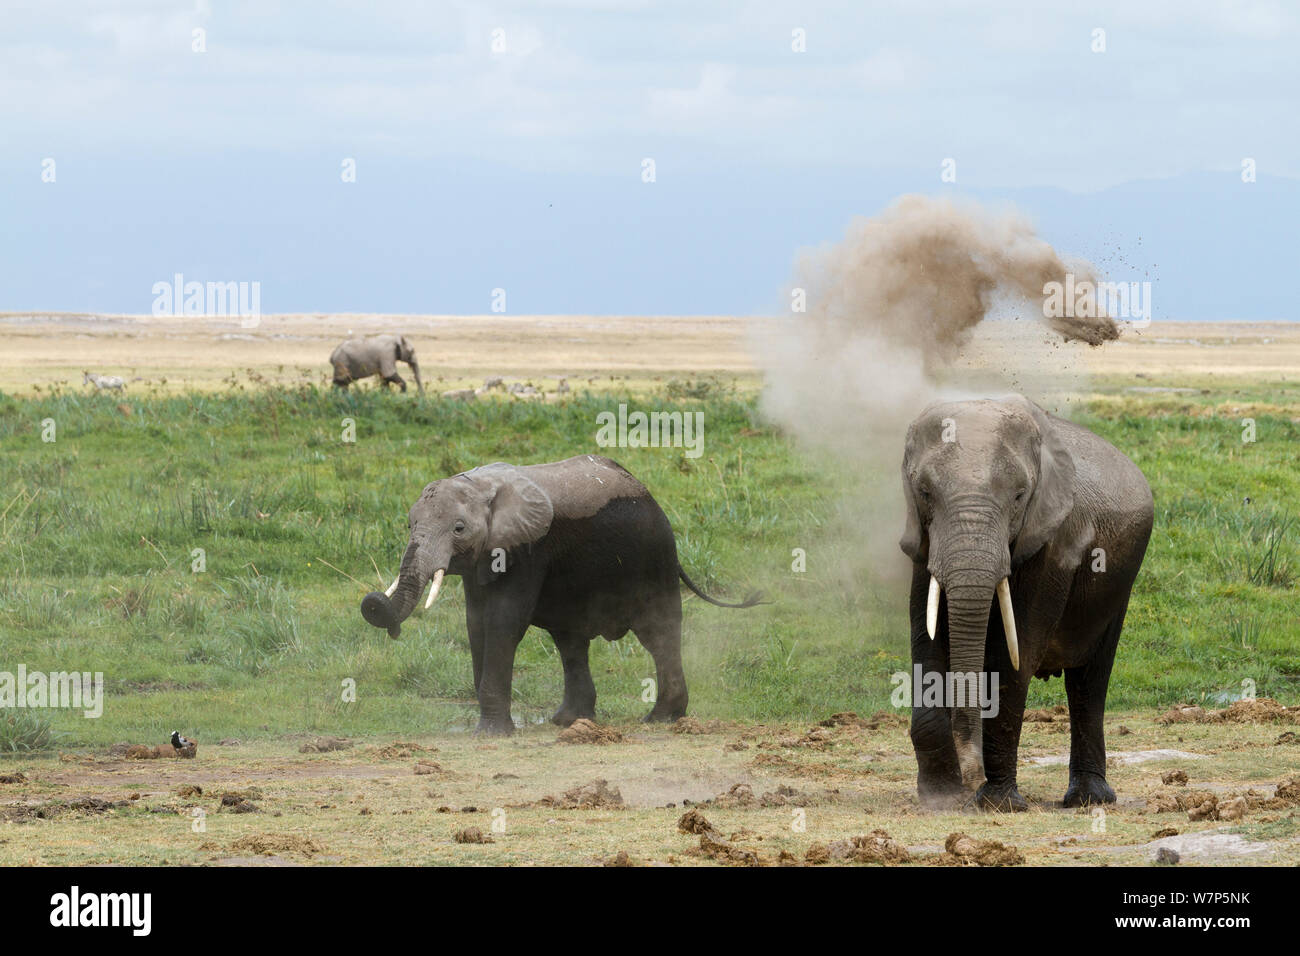 L'éléphant africain (Loxodonta africana) echelle de poussière. Le Parc national Amboseli, au Kenya. Banque D'Images